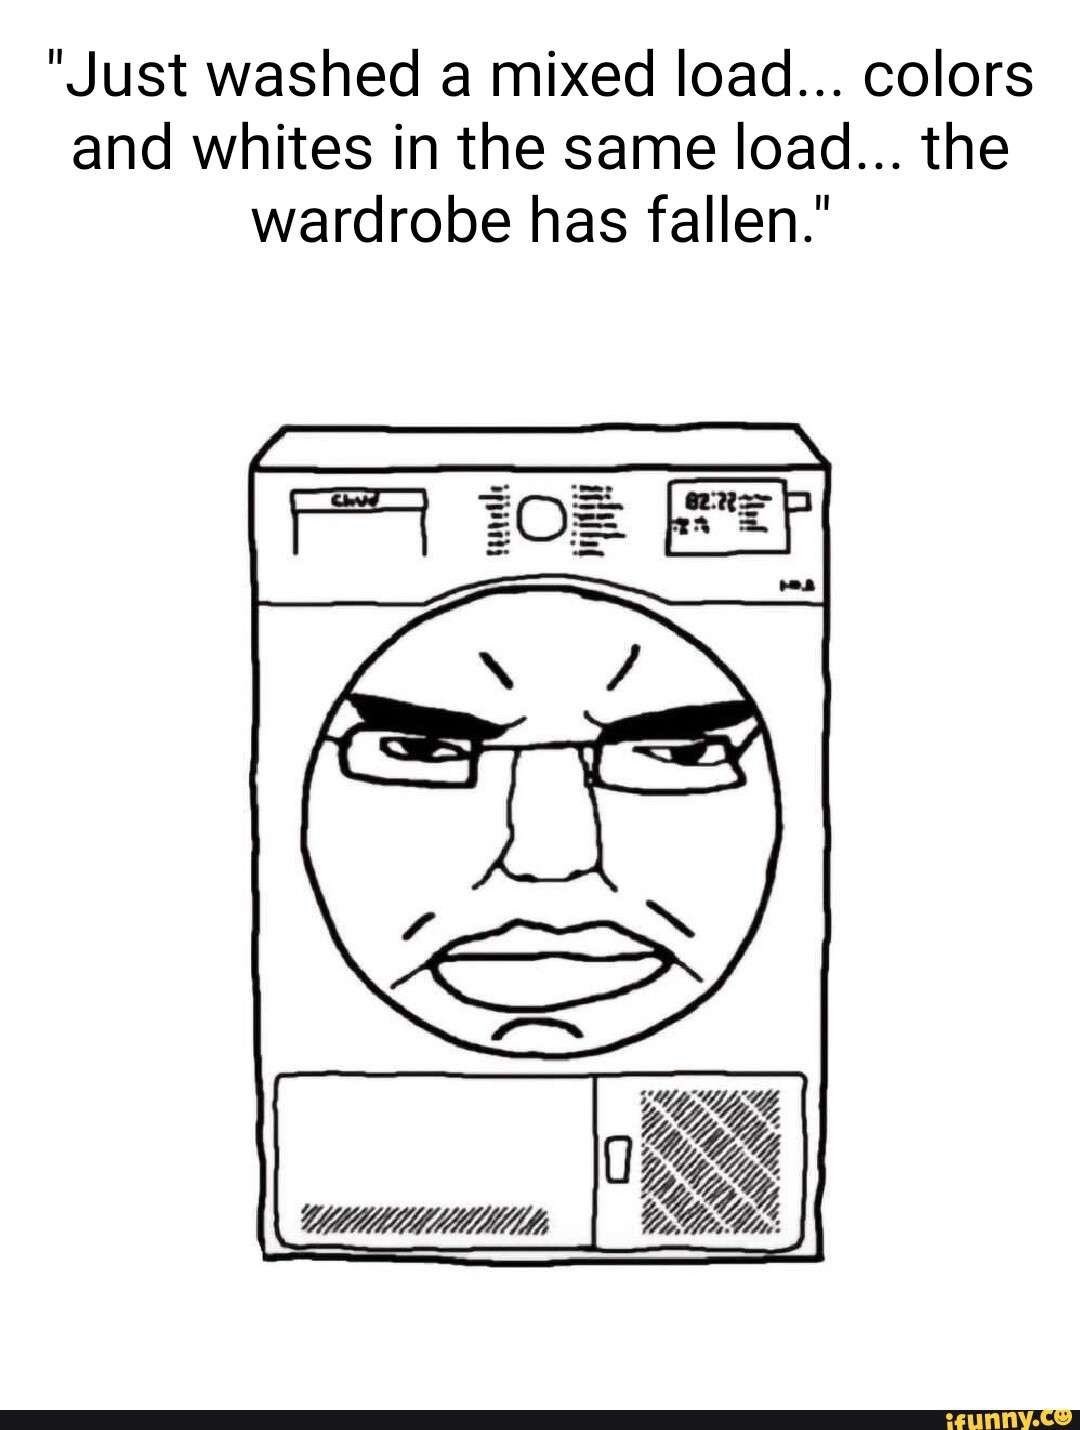 dongs in a wardrobe - meme